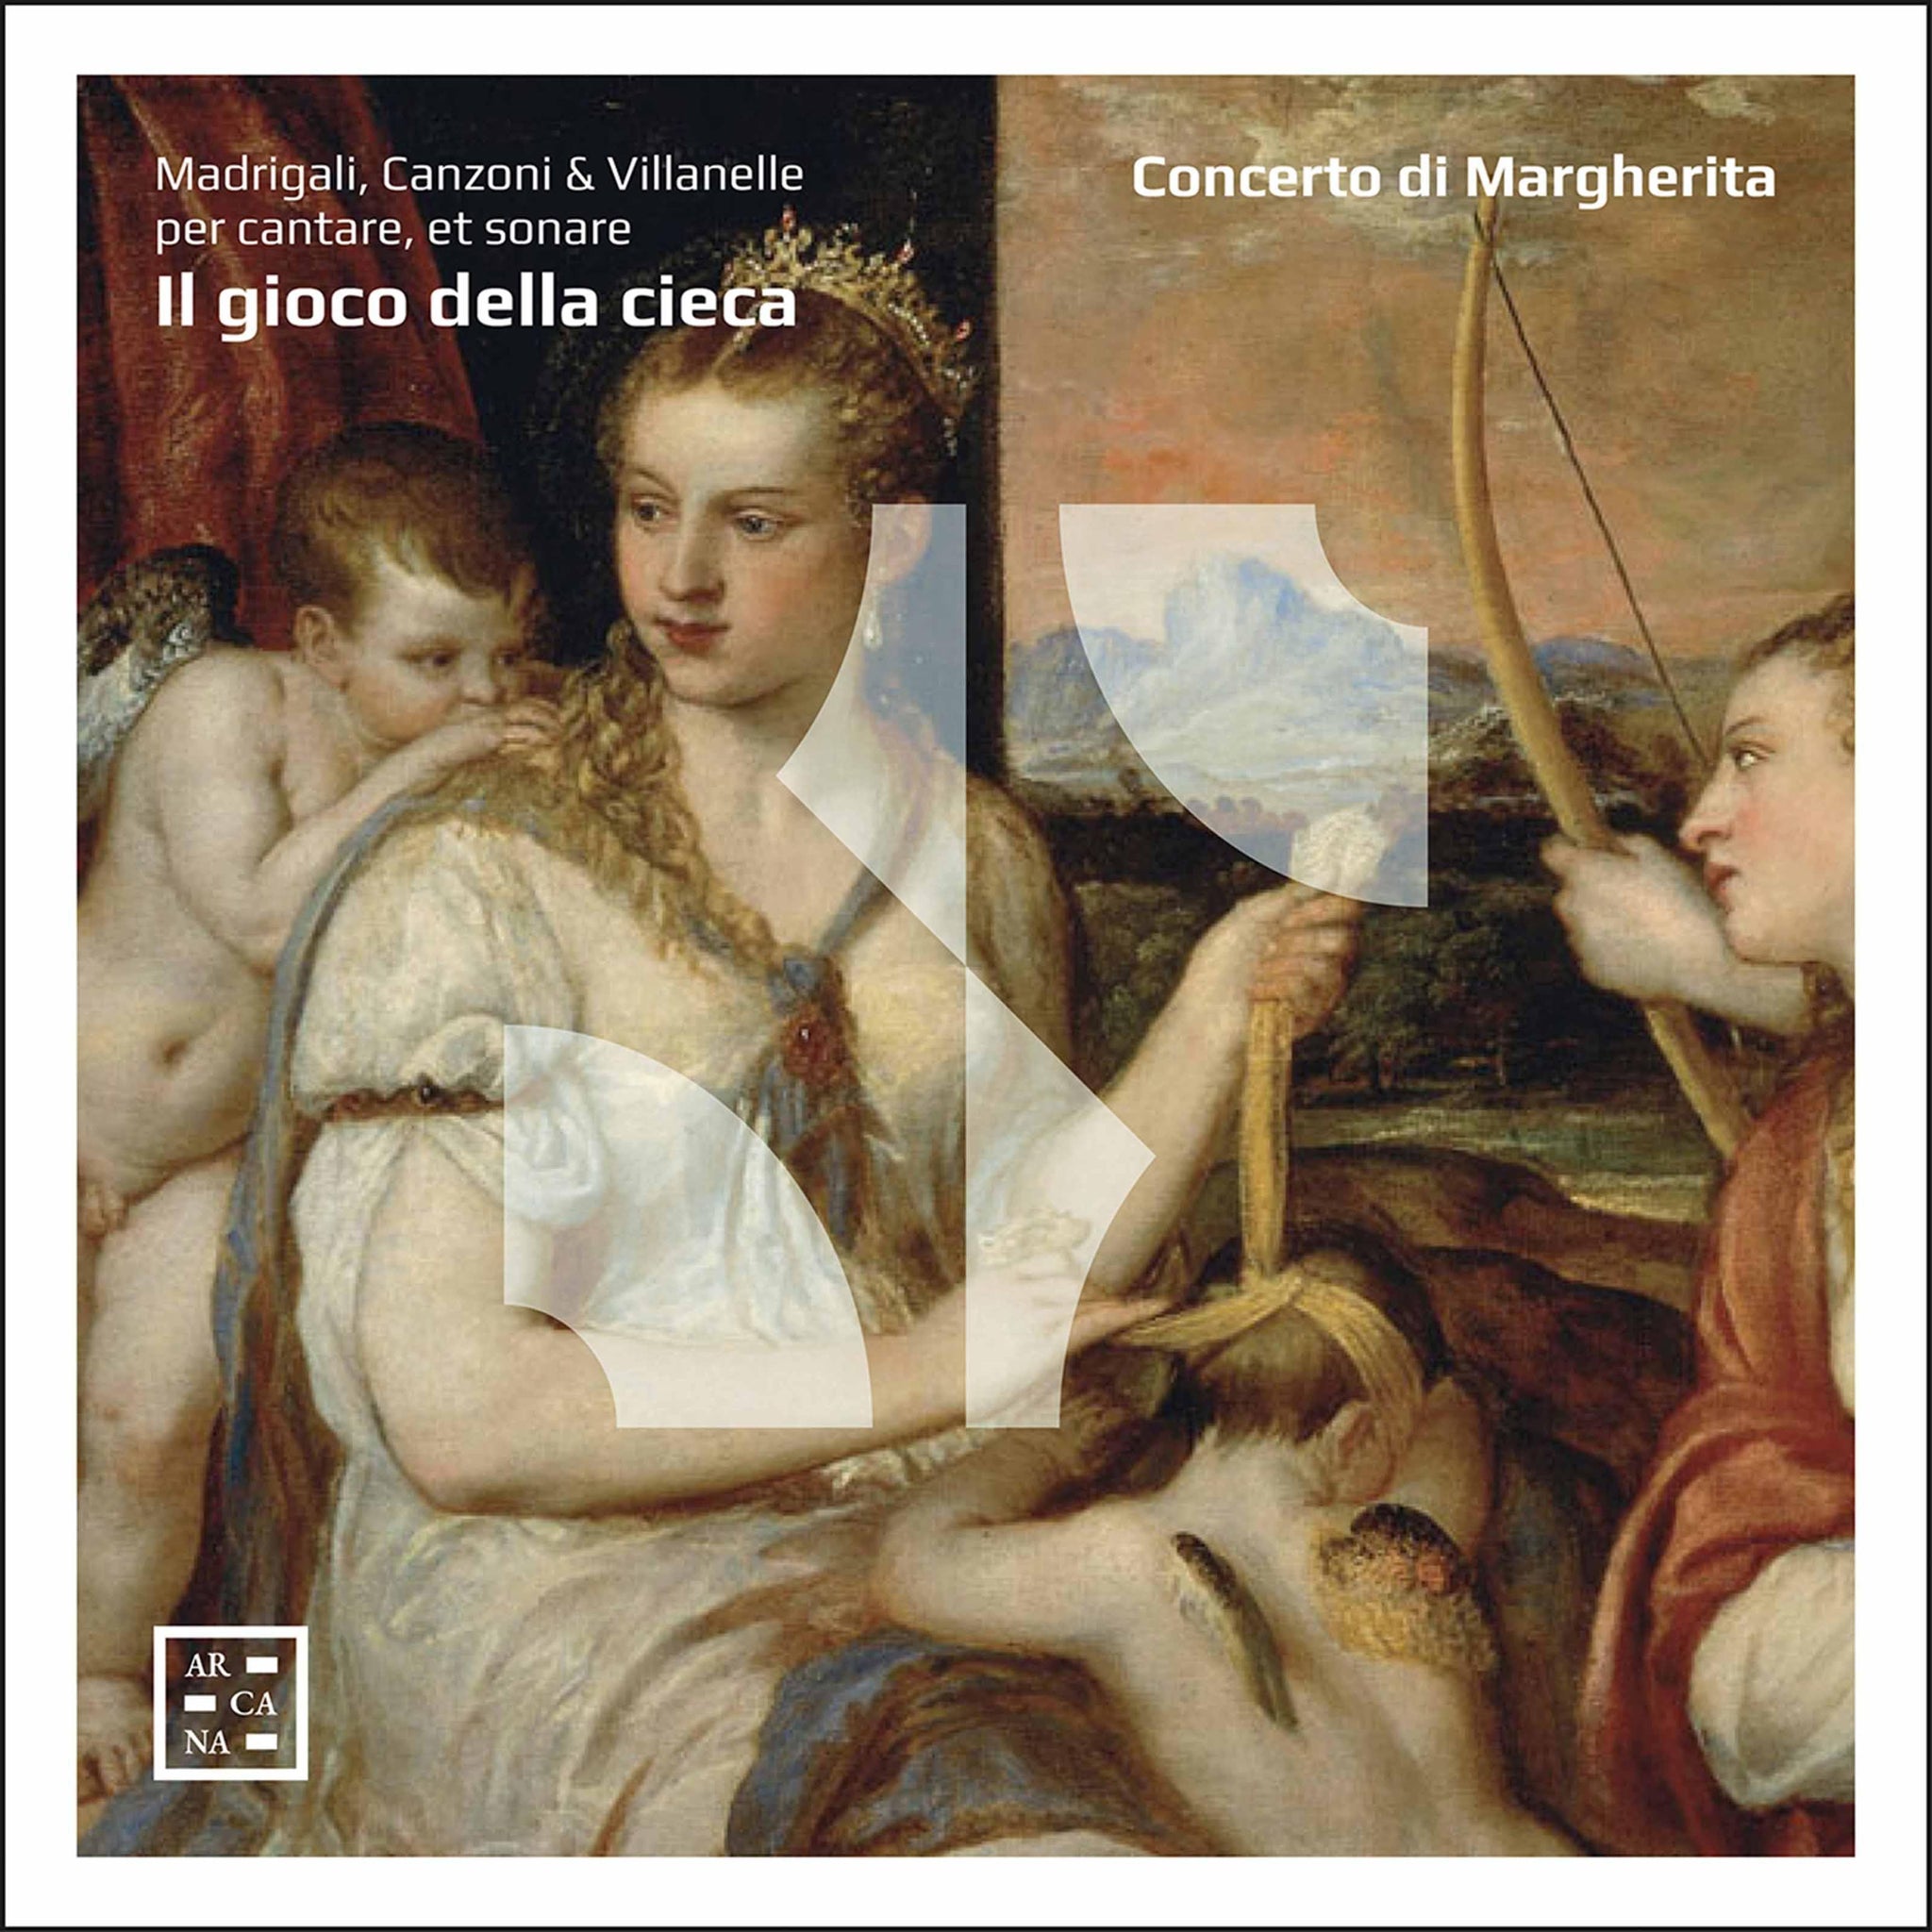 Il gioco della cieca: Madrigali, Canzoni & Villanelle / Concerto di Margherita - ArkivMusic